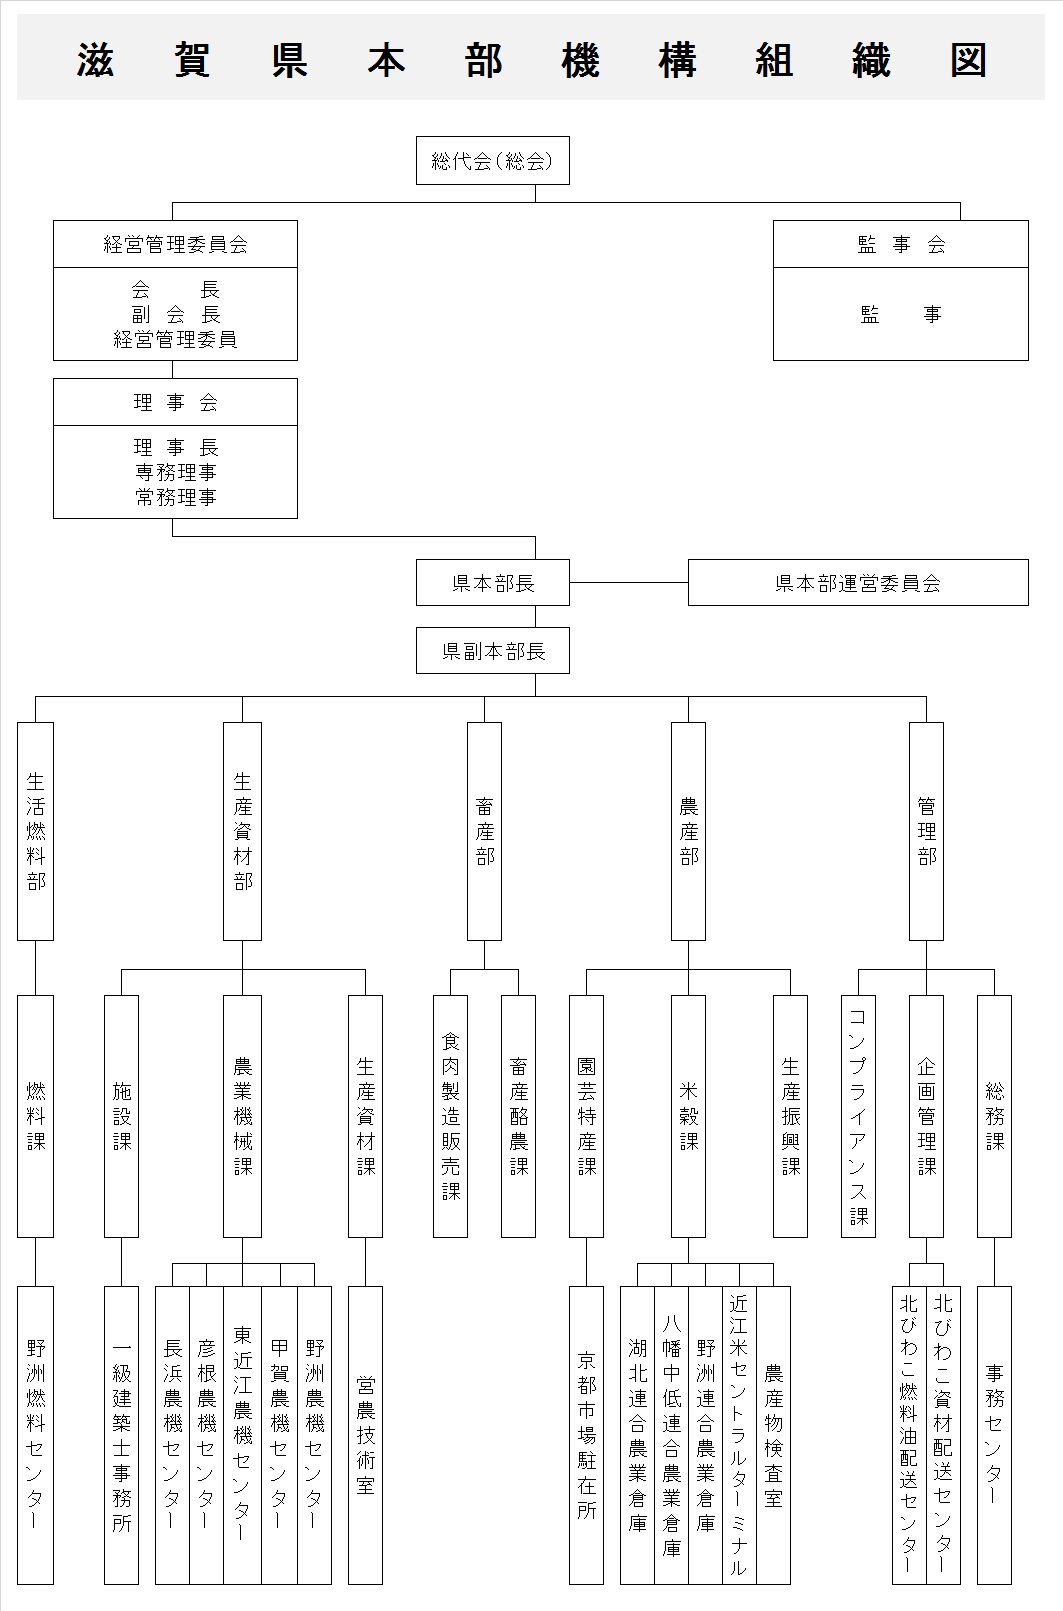 滋賀県本部機構組織図